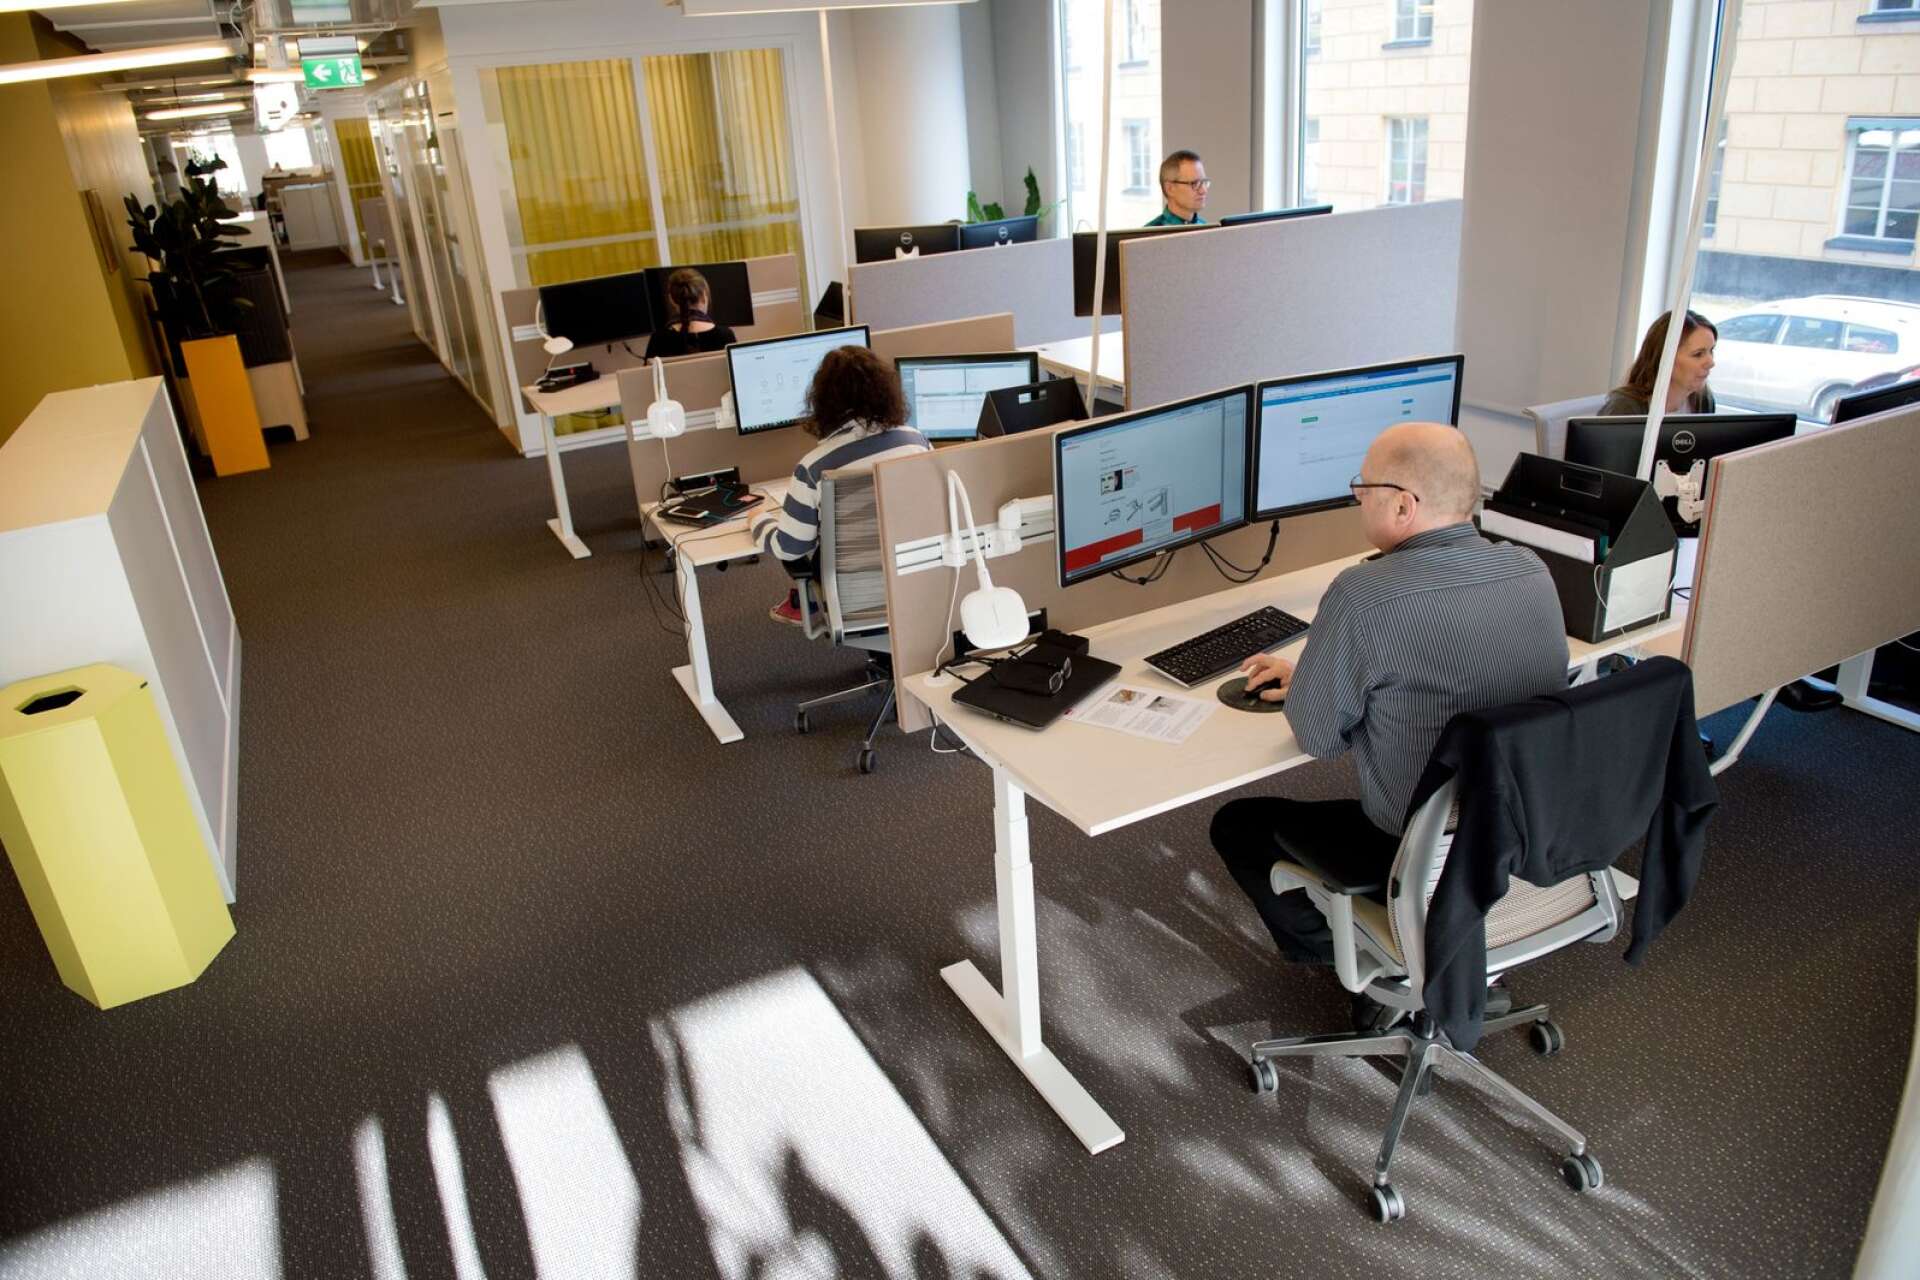 Kontoret behövs för att vi ska kunna arbeta där vi är mest produktiva. Nästan dubbelt så många anser sig vara mer produktiva på kontoret än i hemmet, skriver Jonas Lindström.